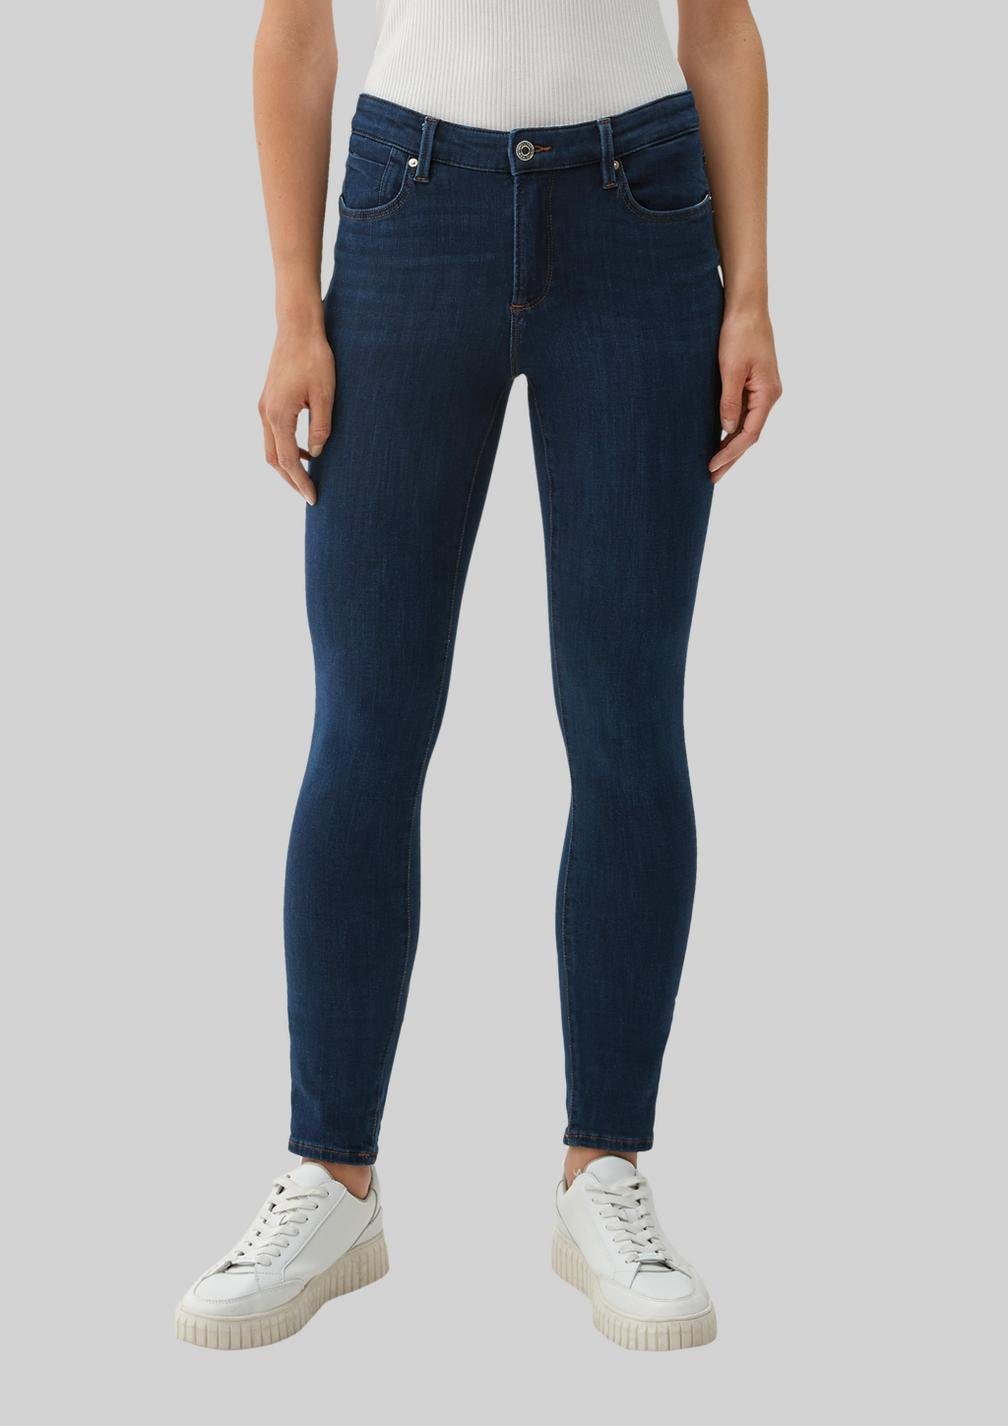 s.Oliver IZABELL Fit in Skinny-fit-Jeans klassischer Taschen mit Jeans 5-Pocket-Form Skinny